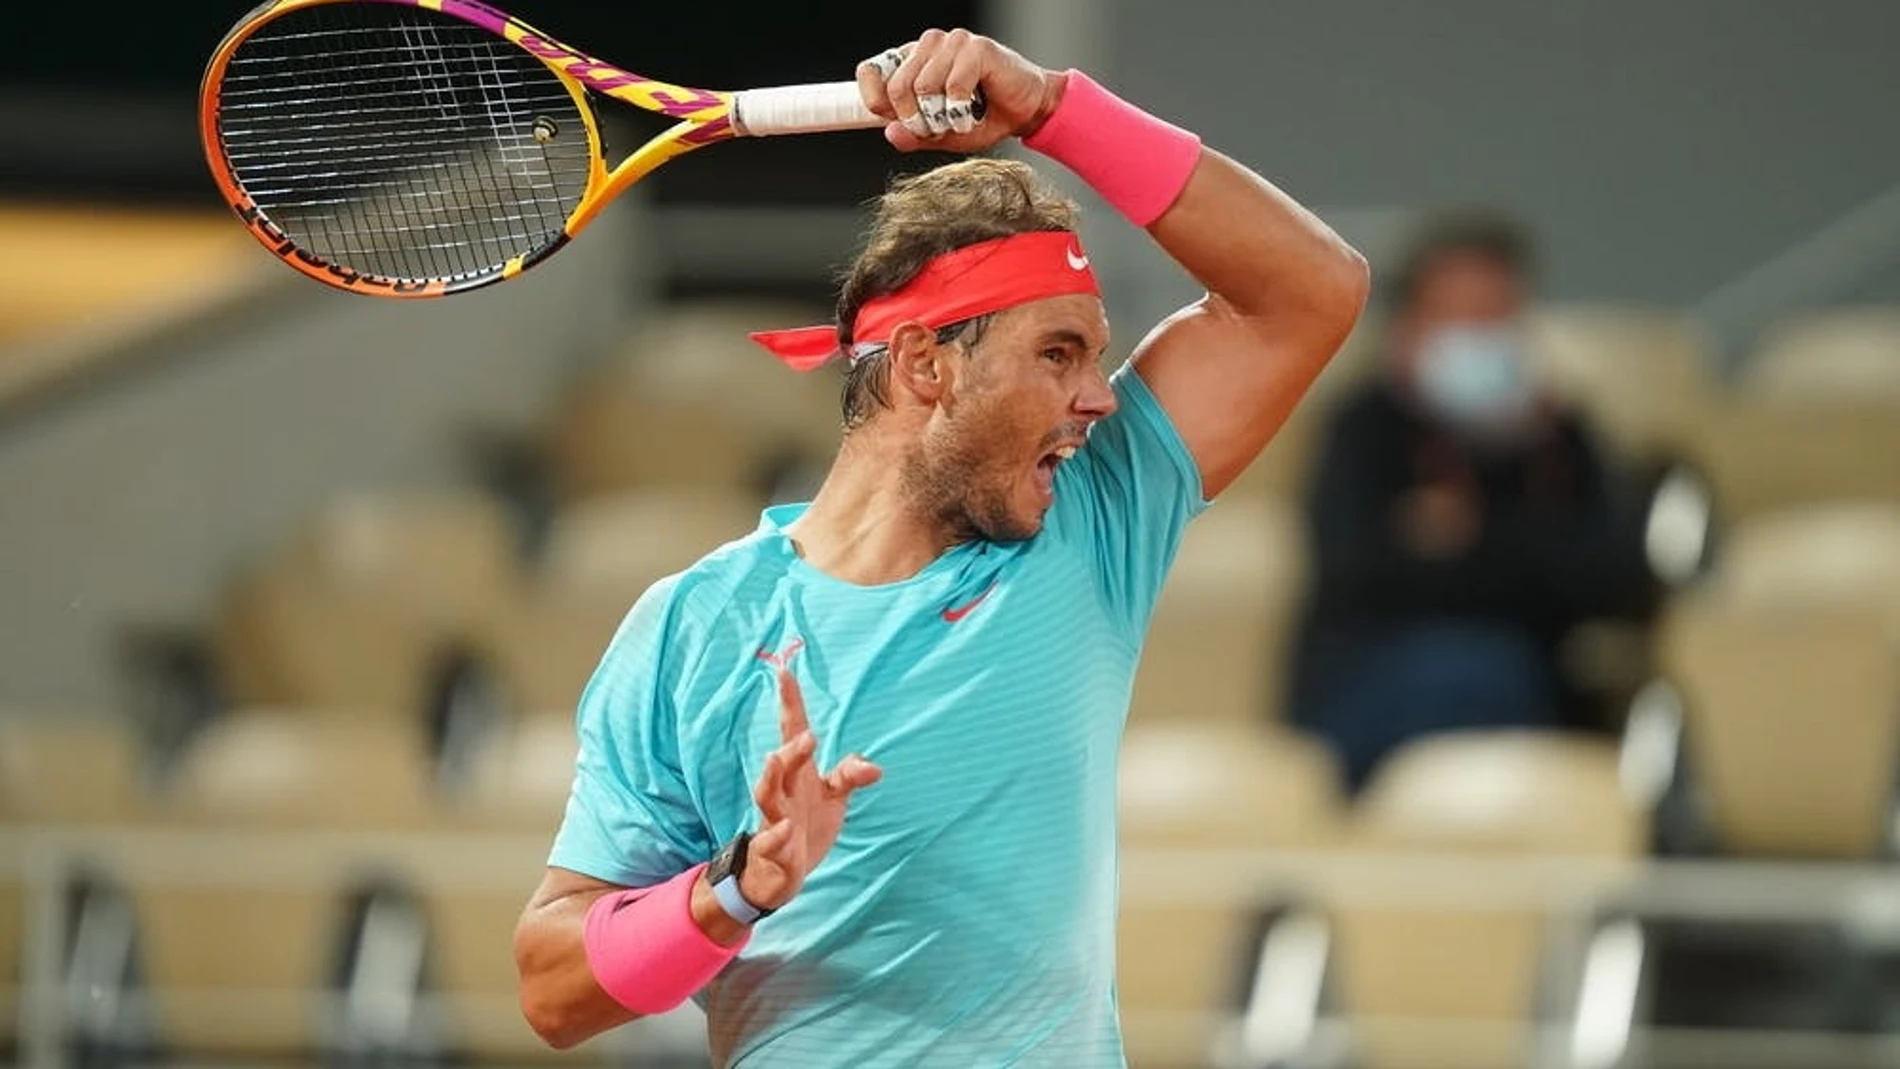 Rafa Nadal golpea un "drive" durante su participación en Roland Garros 2020